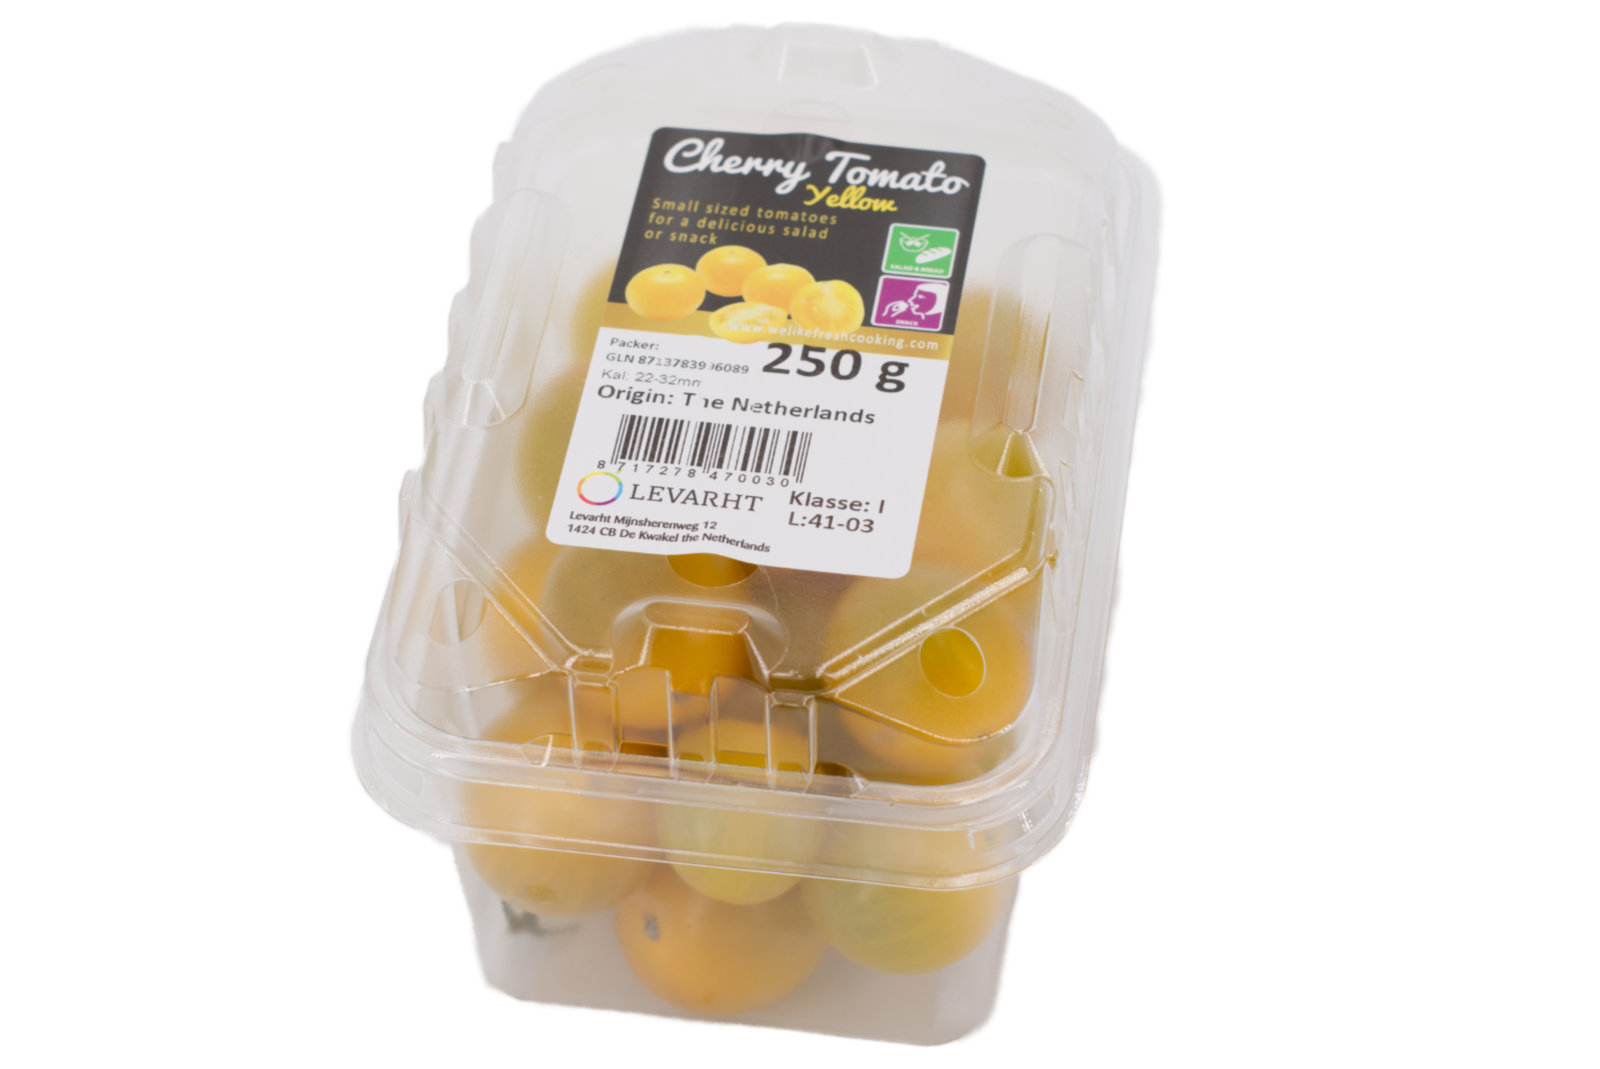 Cherrytomaten "gelb" 9x250g - Schale -